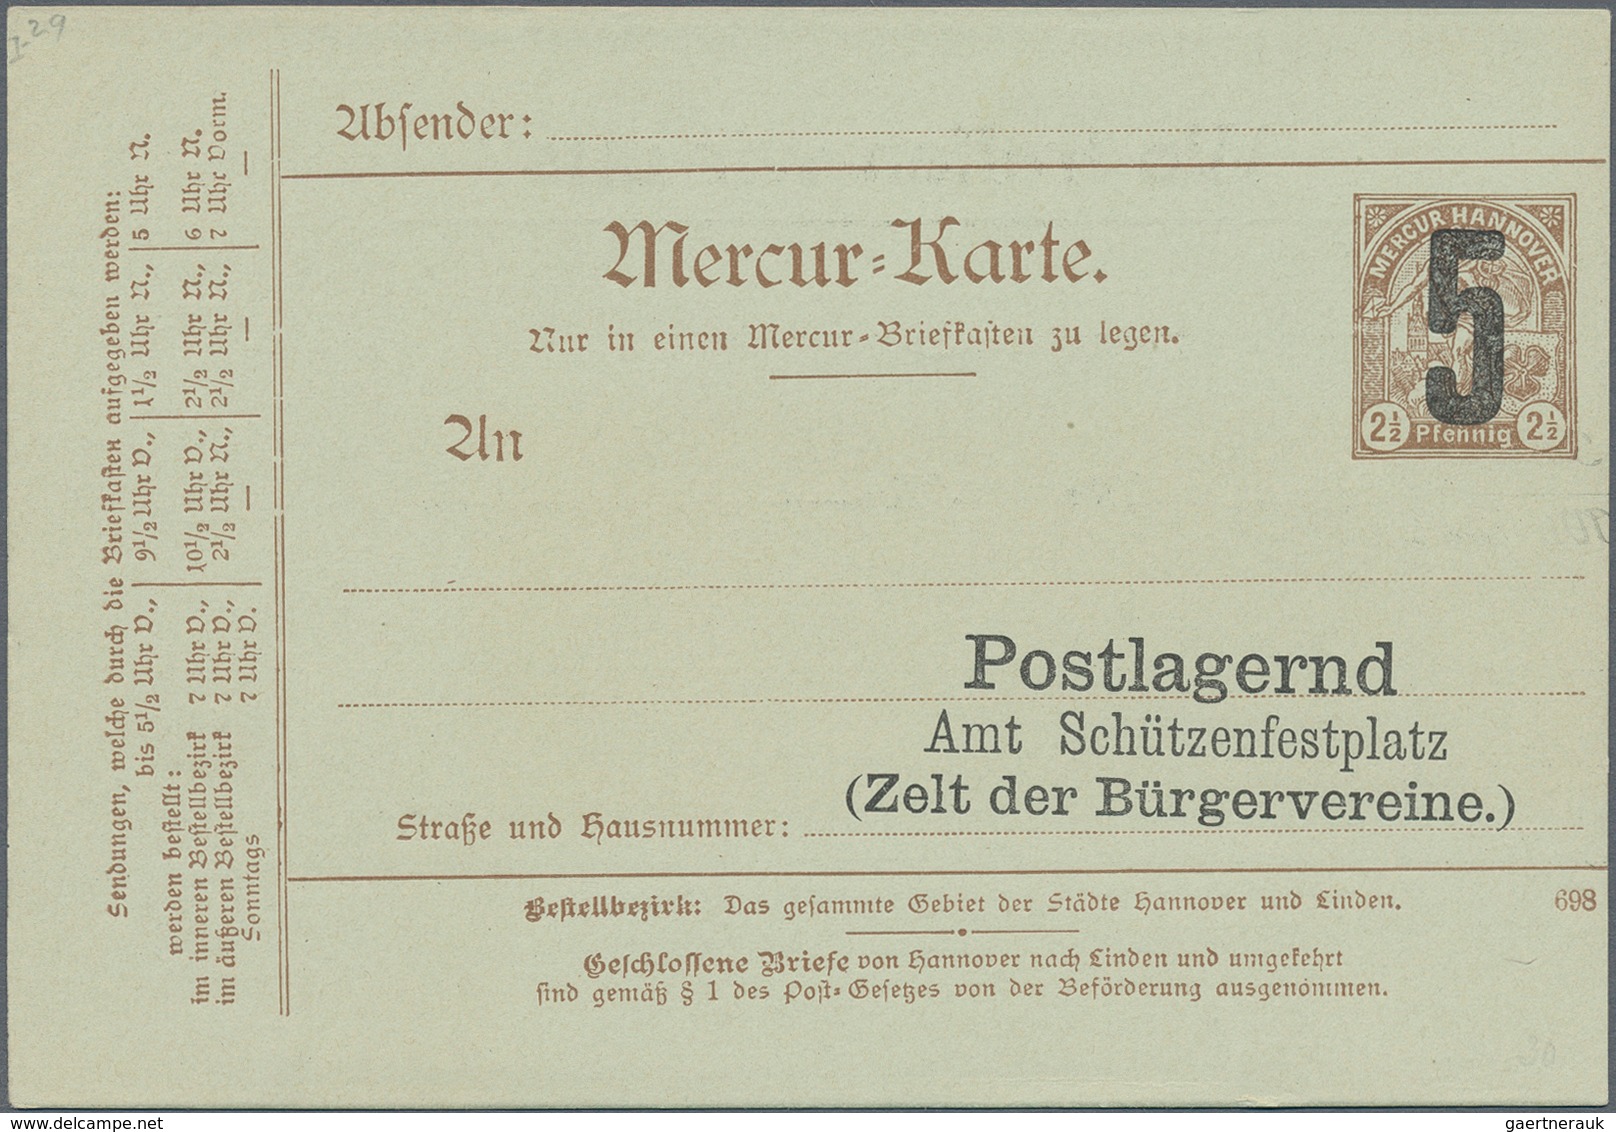 Deutsches Reich - Privatpost (Stadtpost): 1880/1900 (ca.), umfassende Sammlung von ca. 760 (meist un